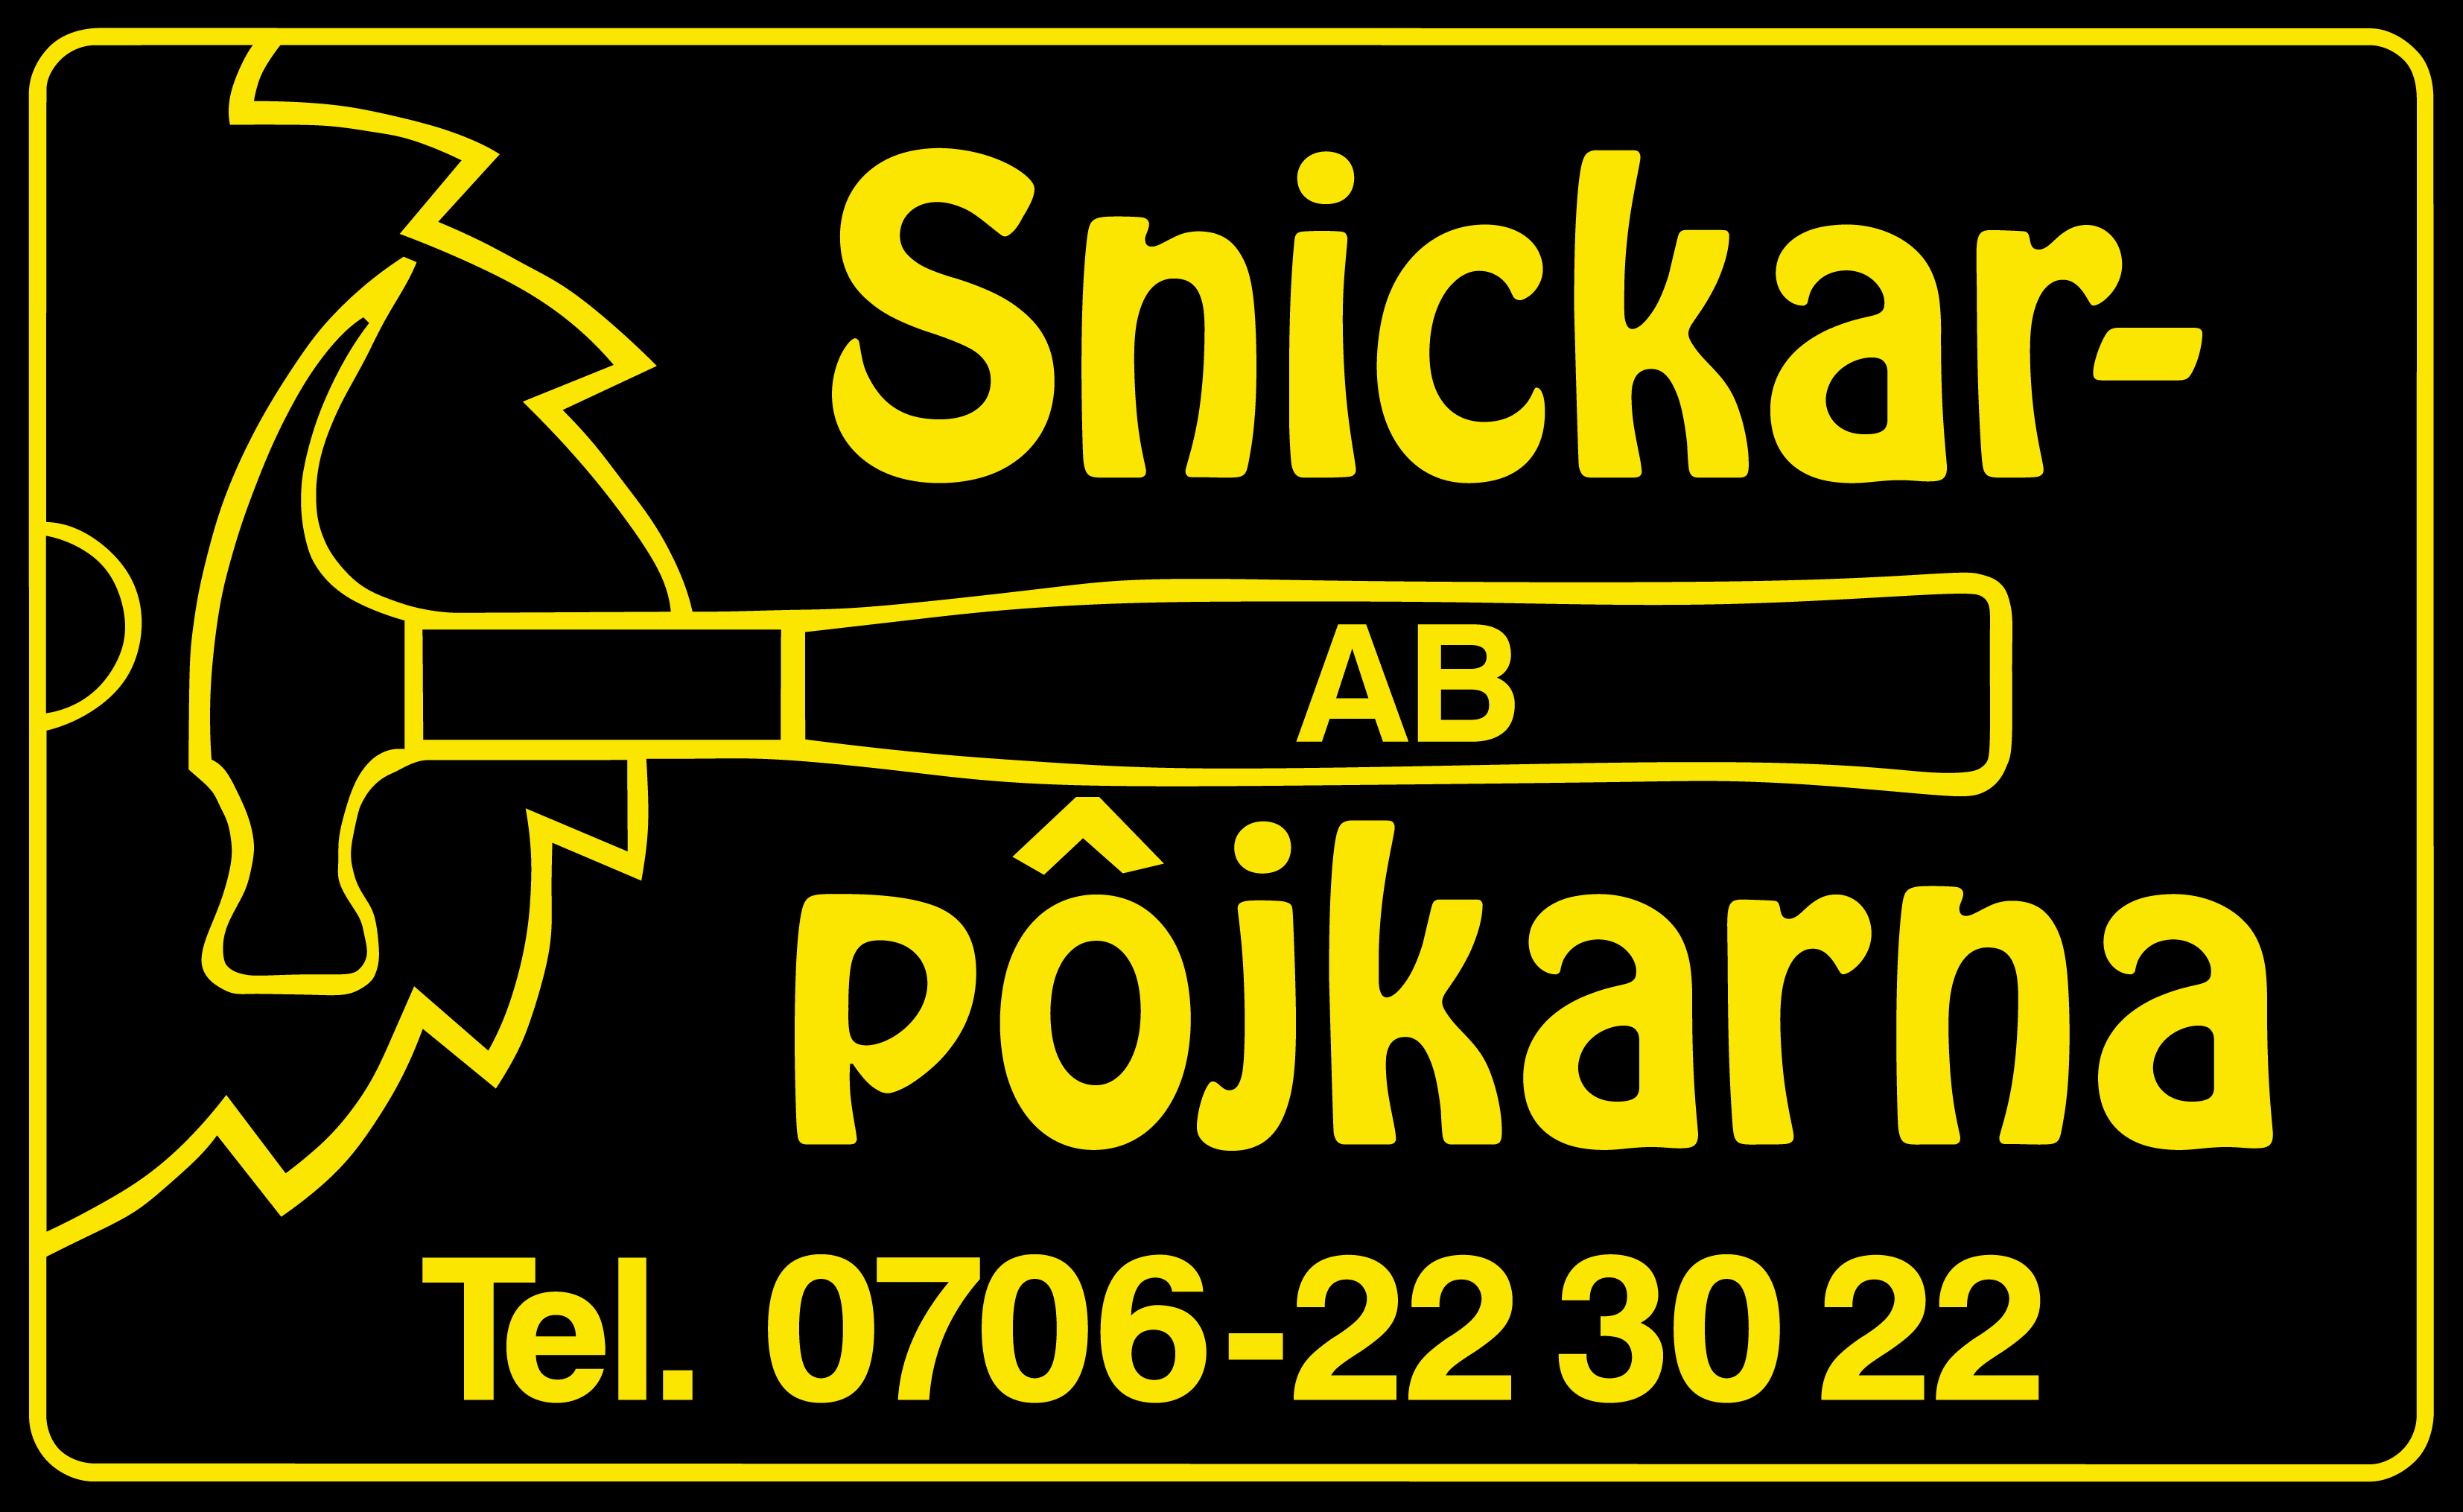 Snickarpojkarna logo